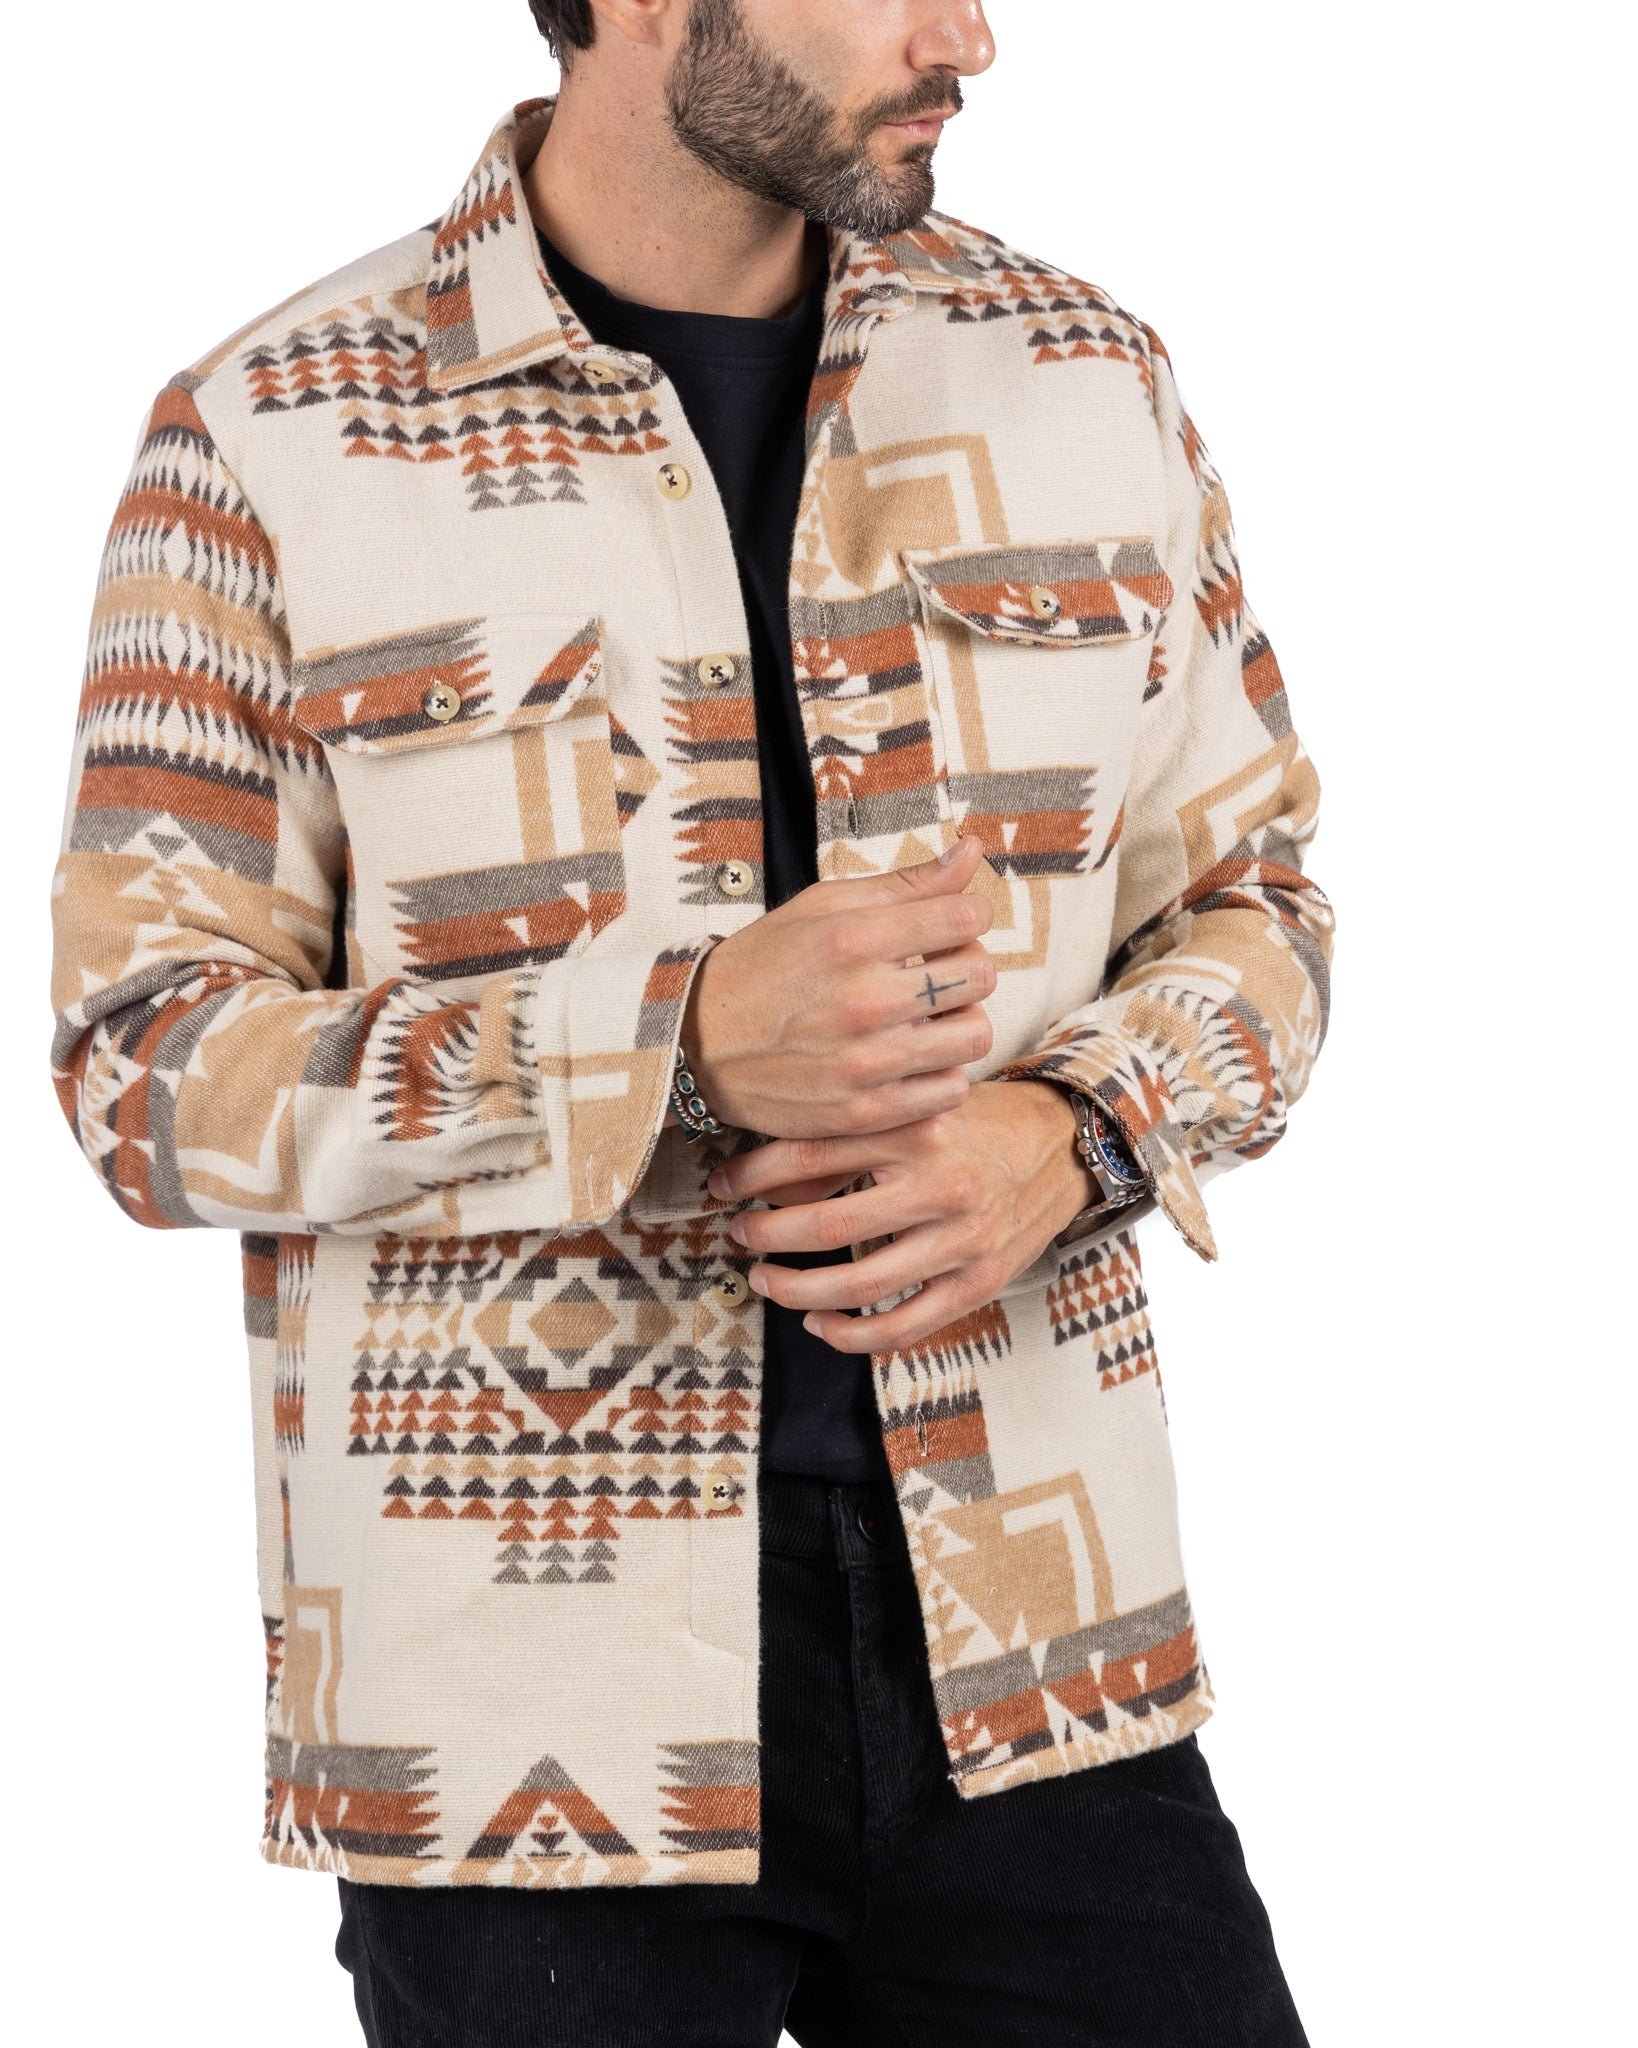 Mayor - beige ethnic patterned jacket